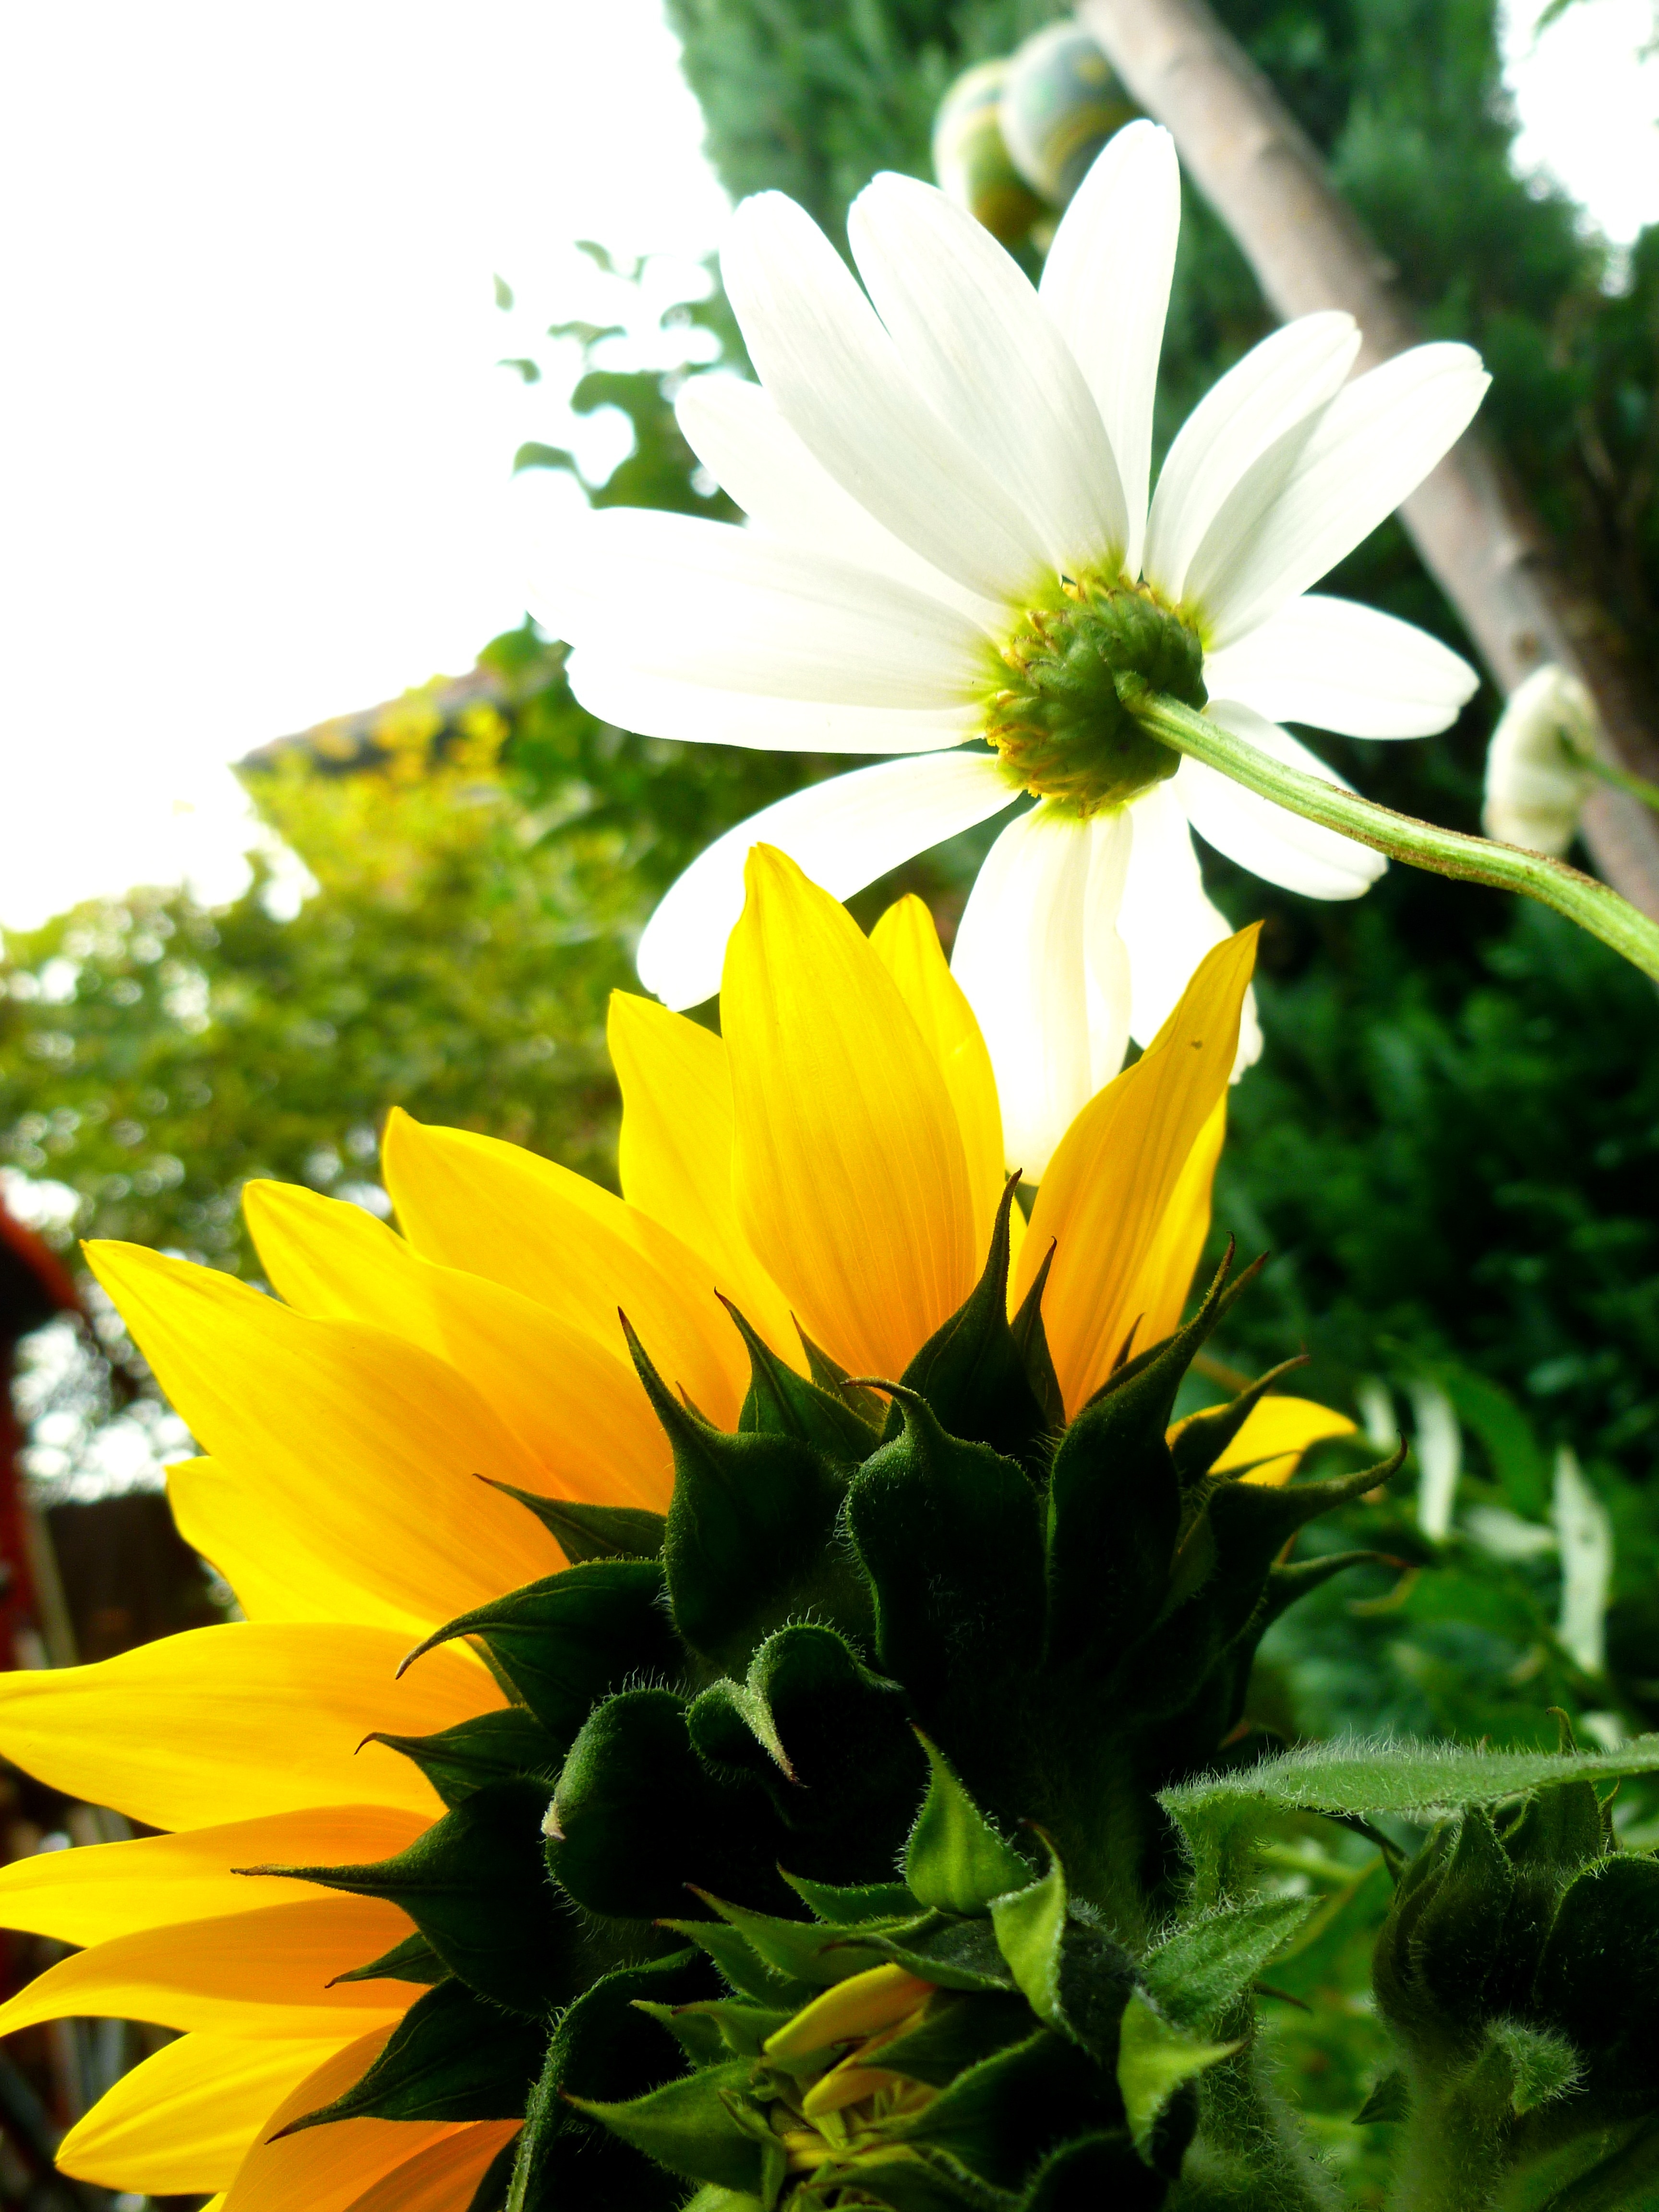 yellow sunflower and white daisy